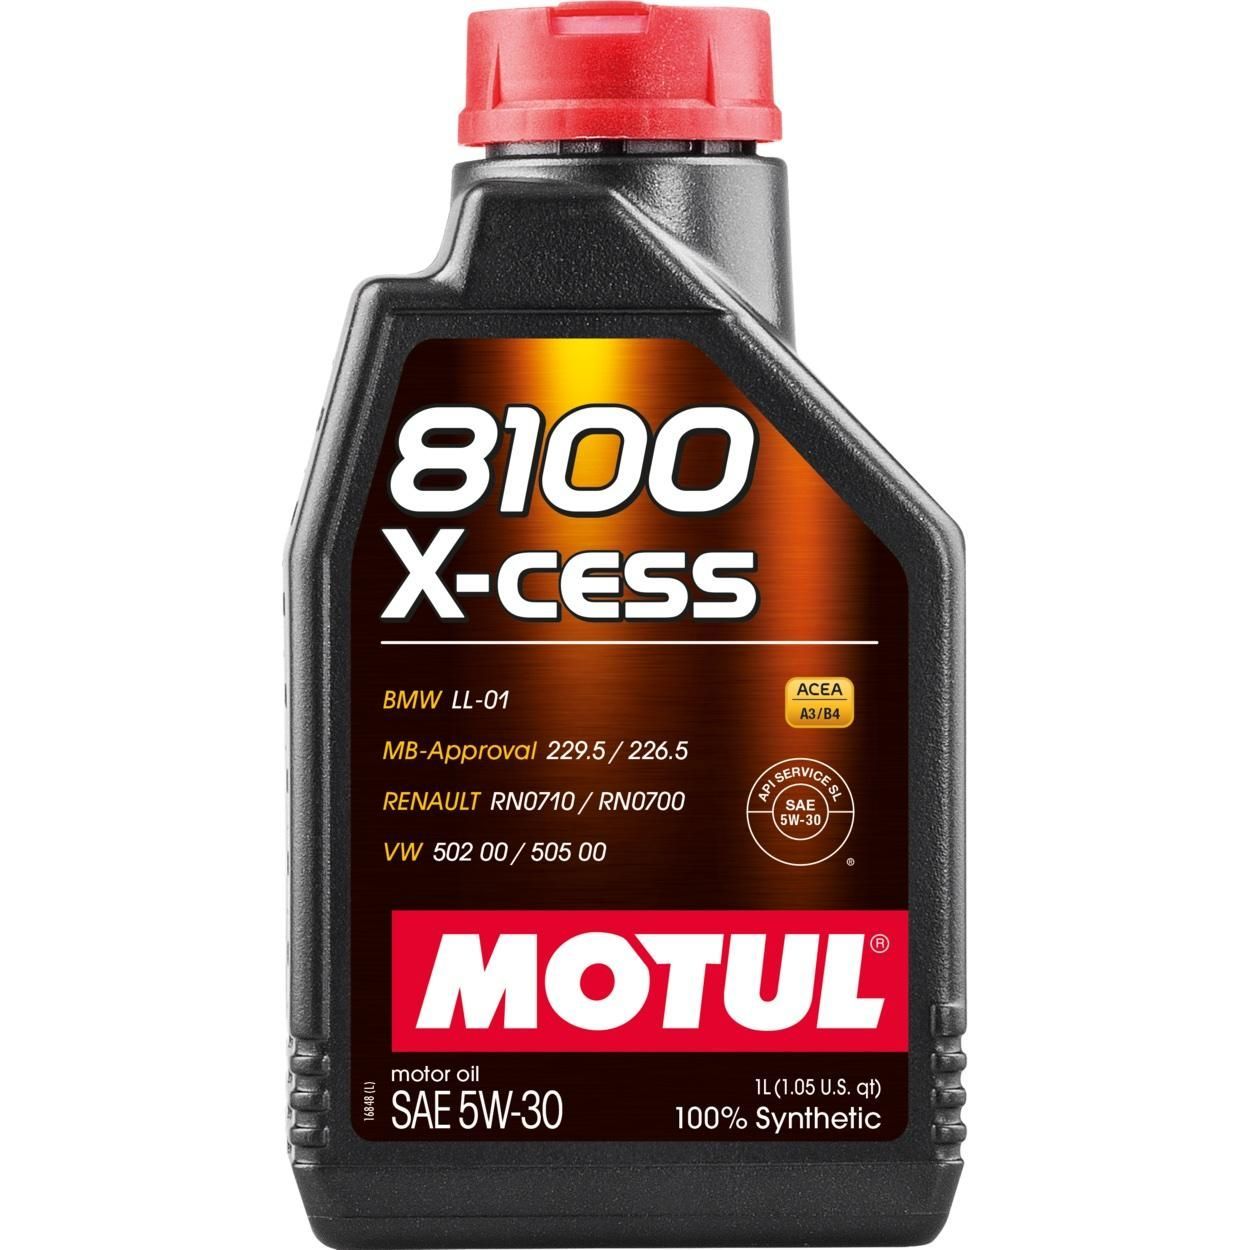 Моторное масло MOTUL 8100 X-cess, 5W30 1 литр 5W-30 (368201 / 102784)